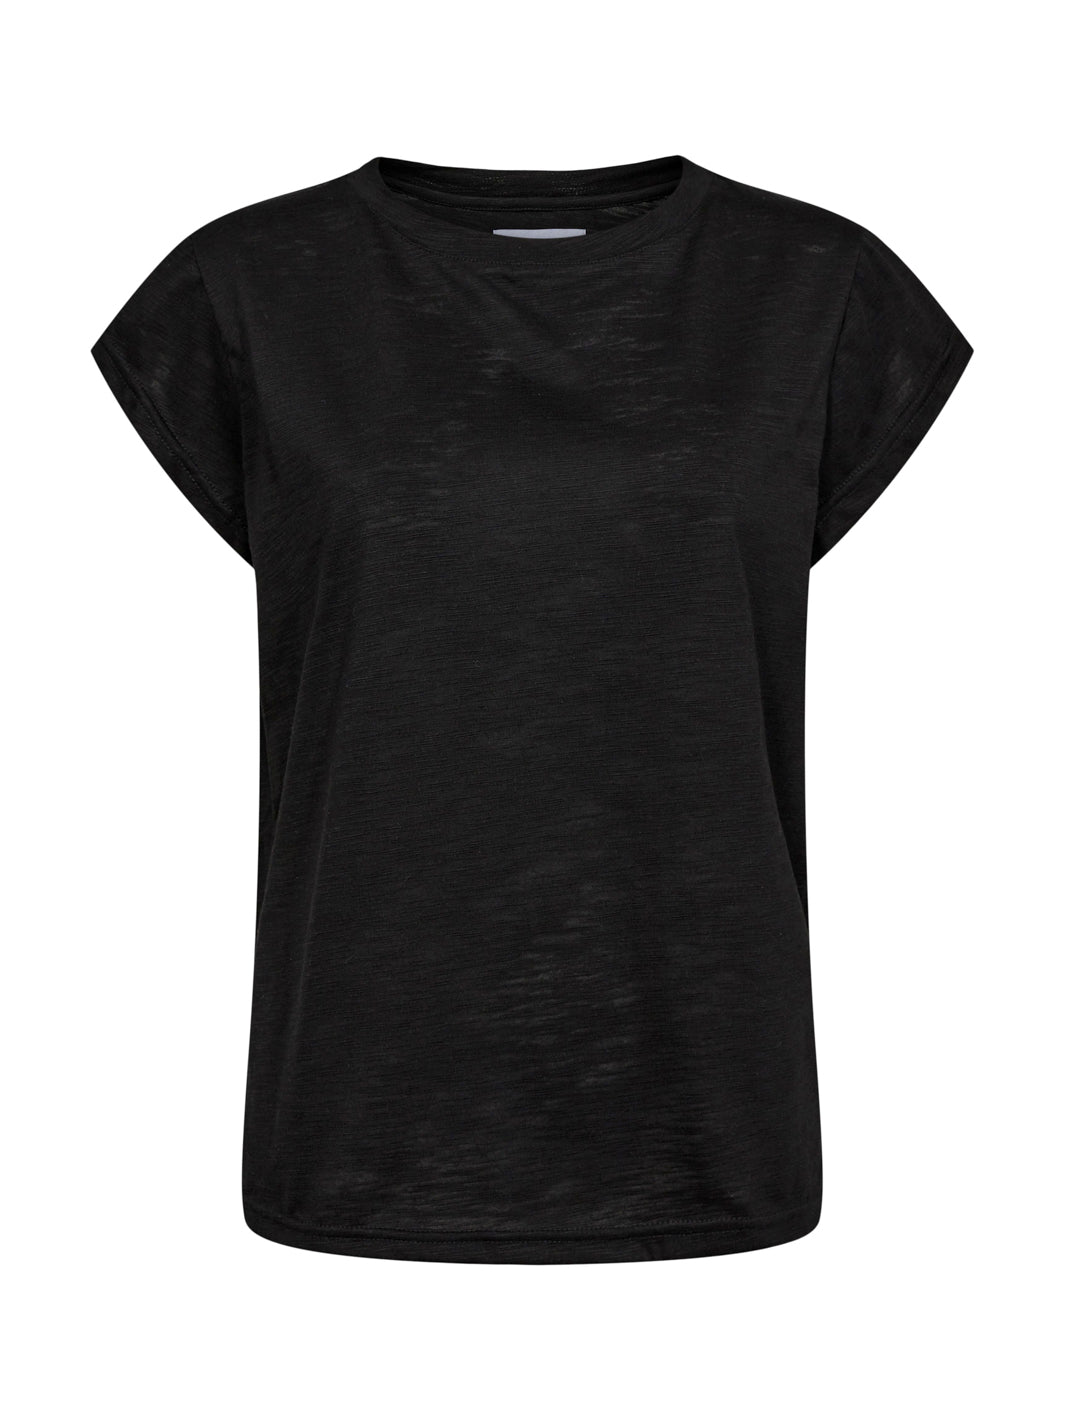 Liberté Ulla t - shirt black - Online - Mode